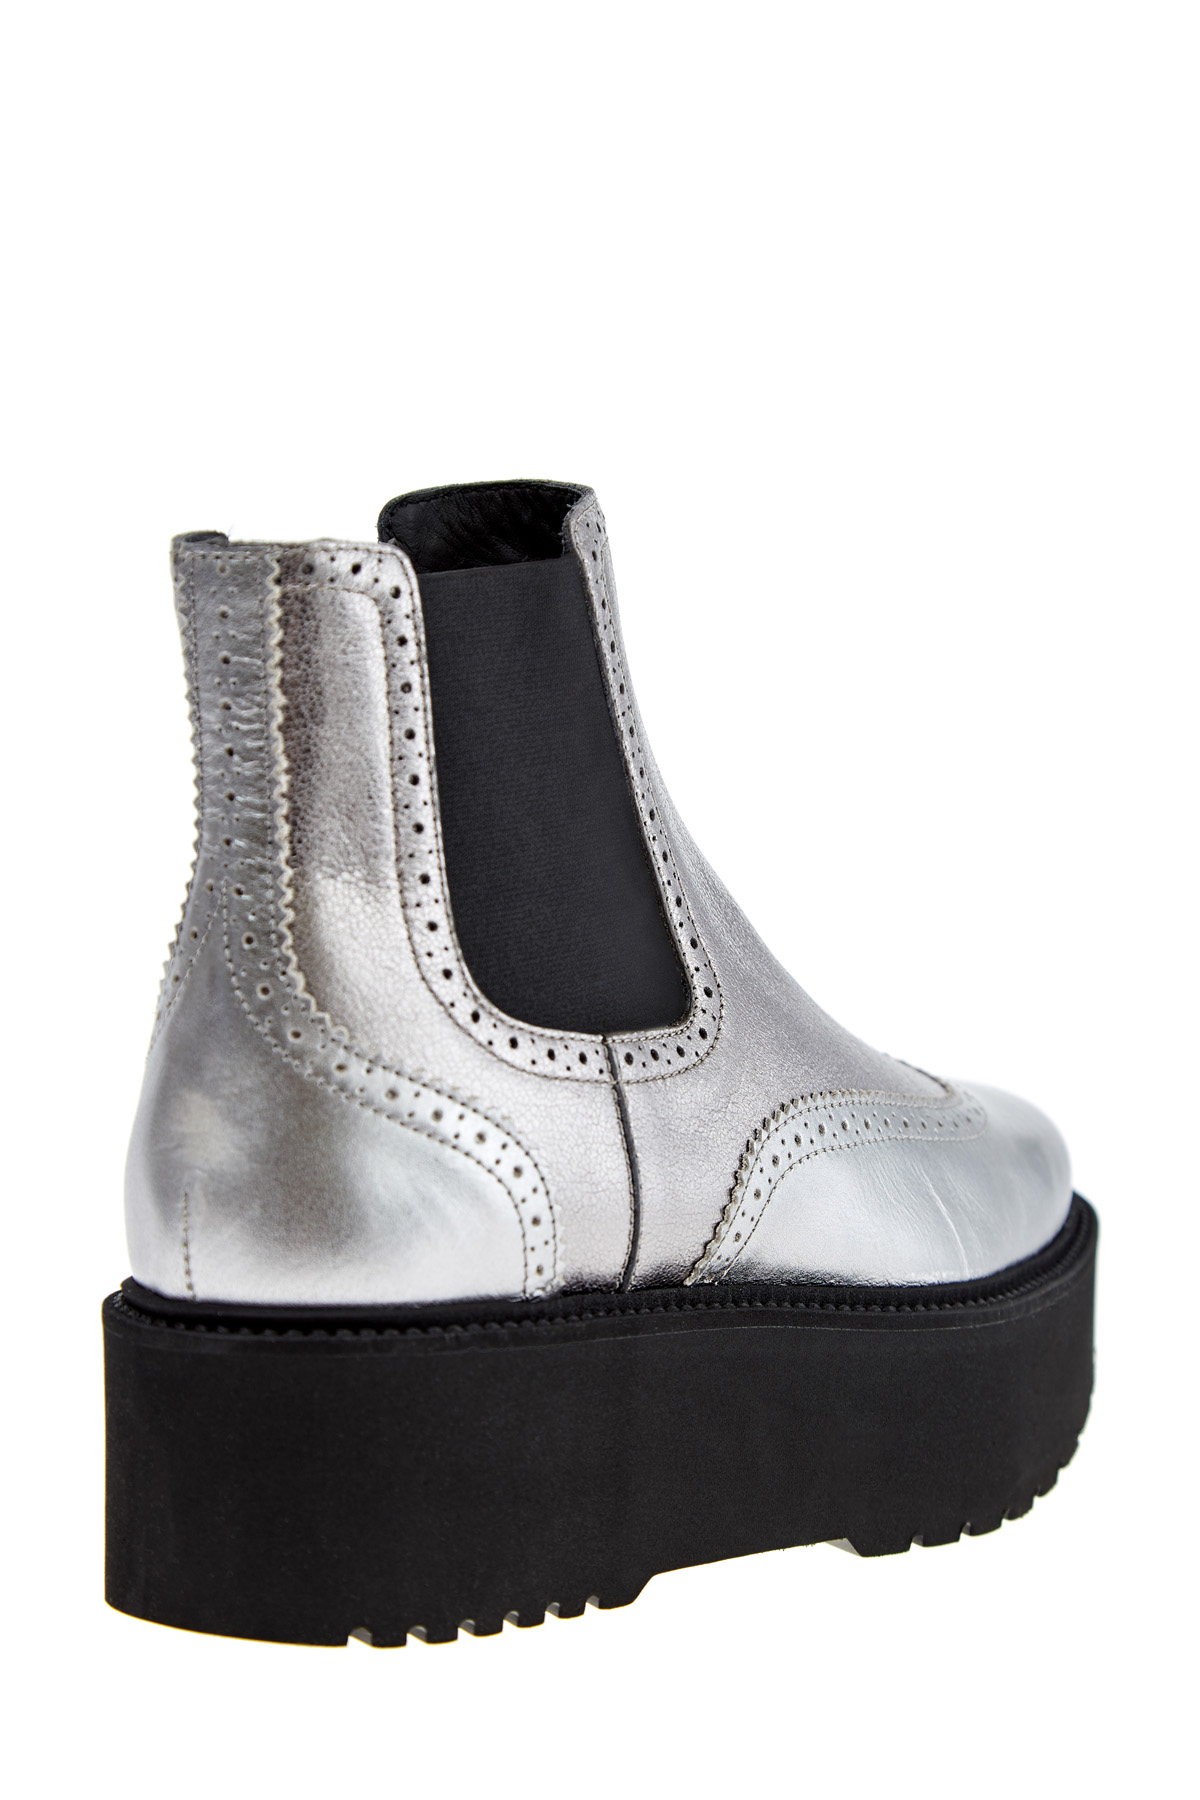 Ботинки с металлизированной отделкой с массивной подошвой HOGAN, цвет серебристый, размер 40;40.5;41 - фото 4